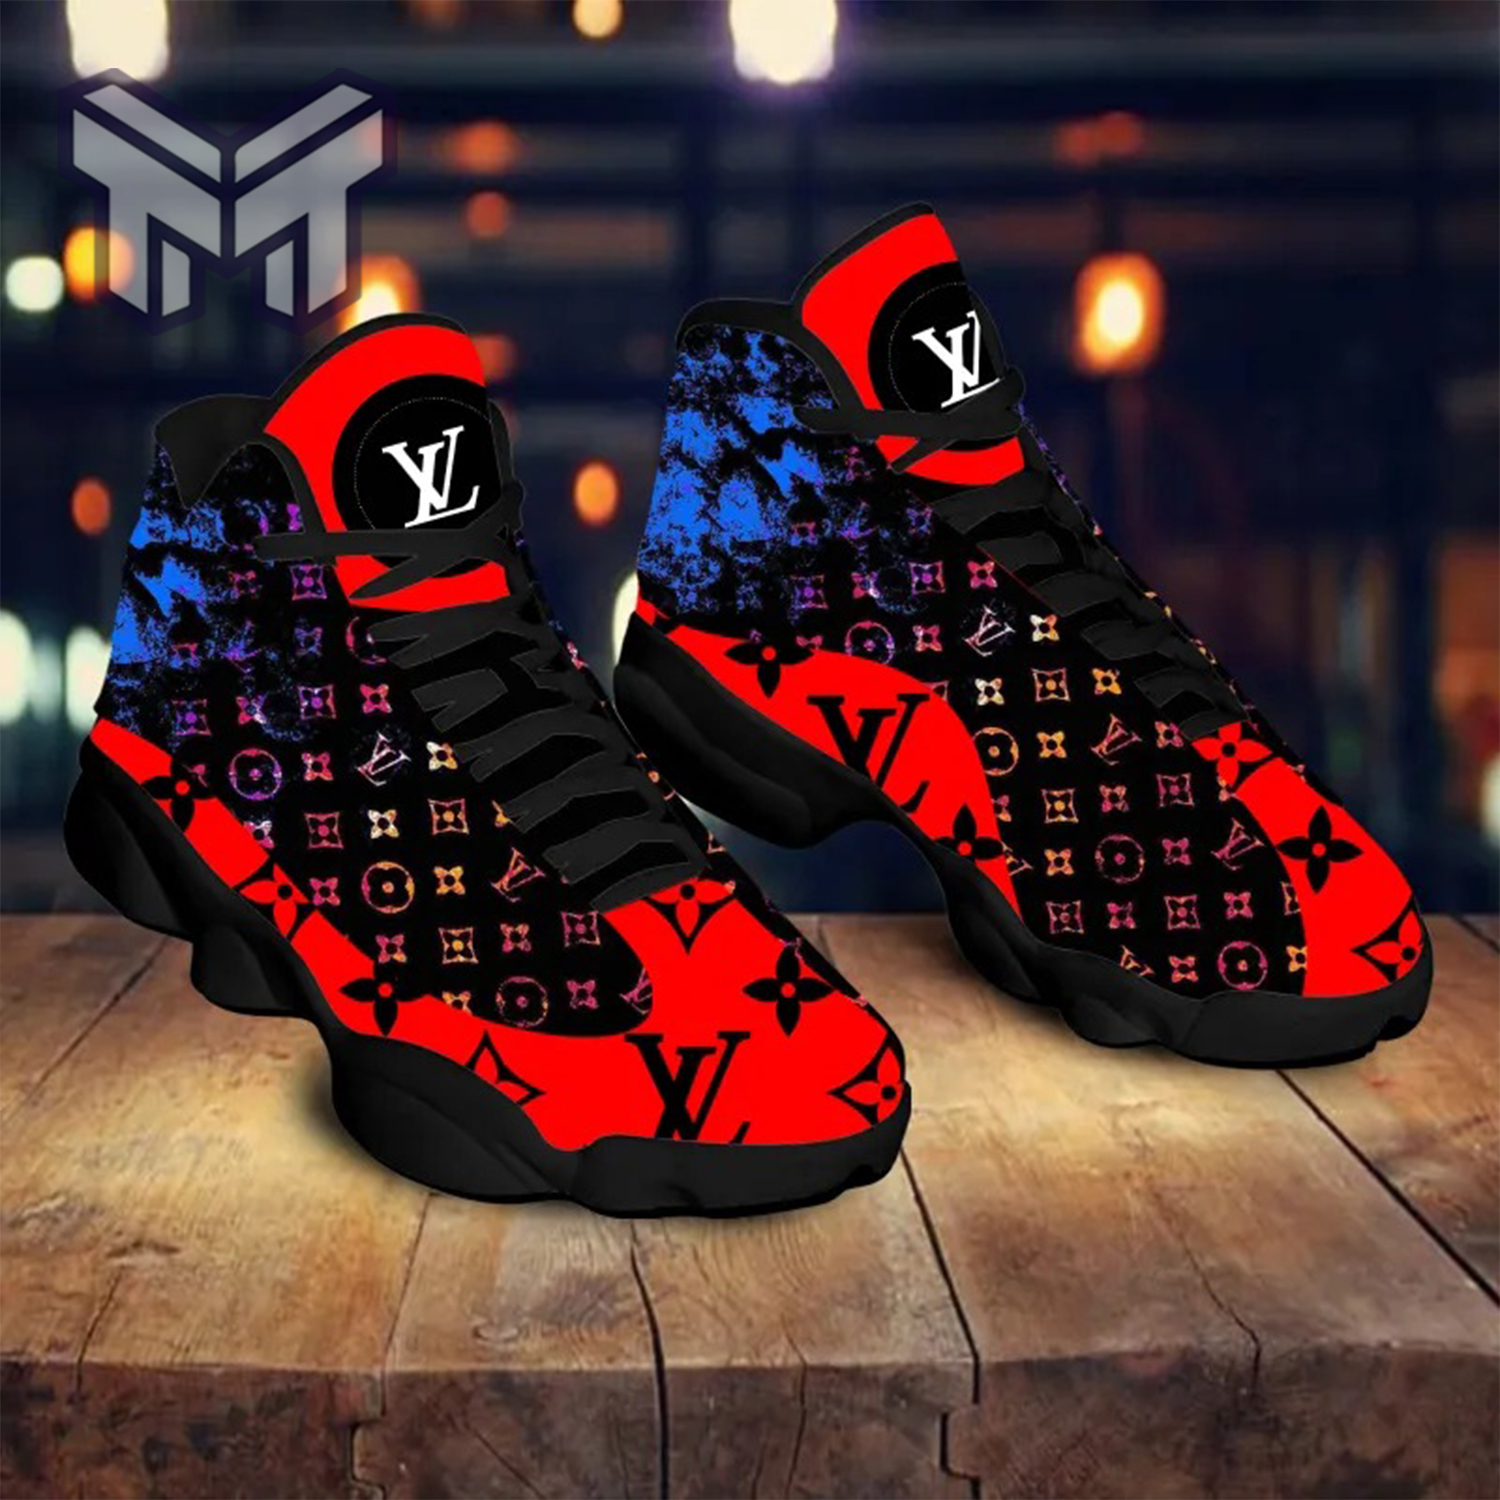 Louis Vuitton Supreme Red Air Jordan 13 Sneakers Shoes - Muranotex Store